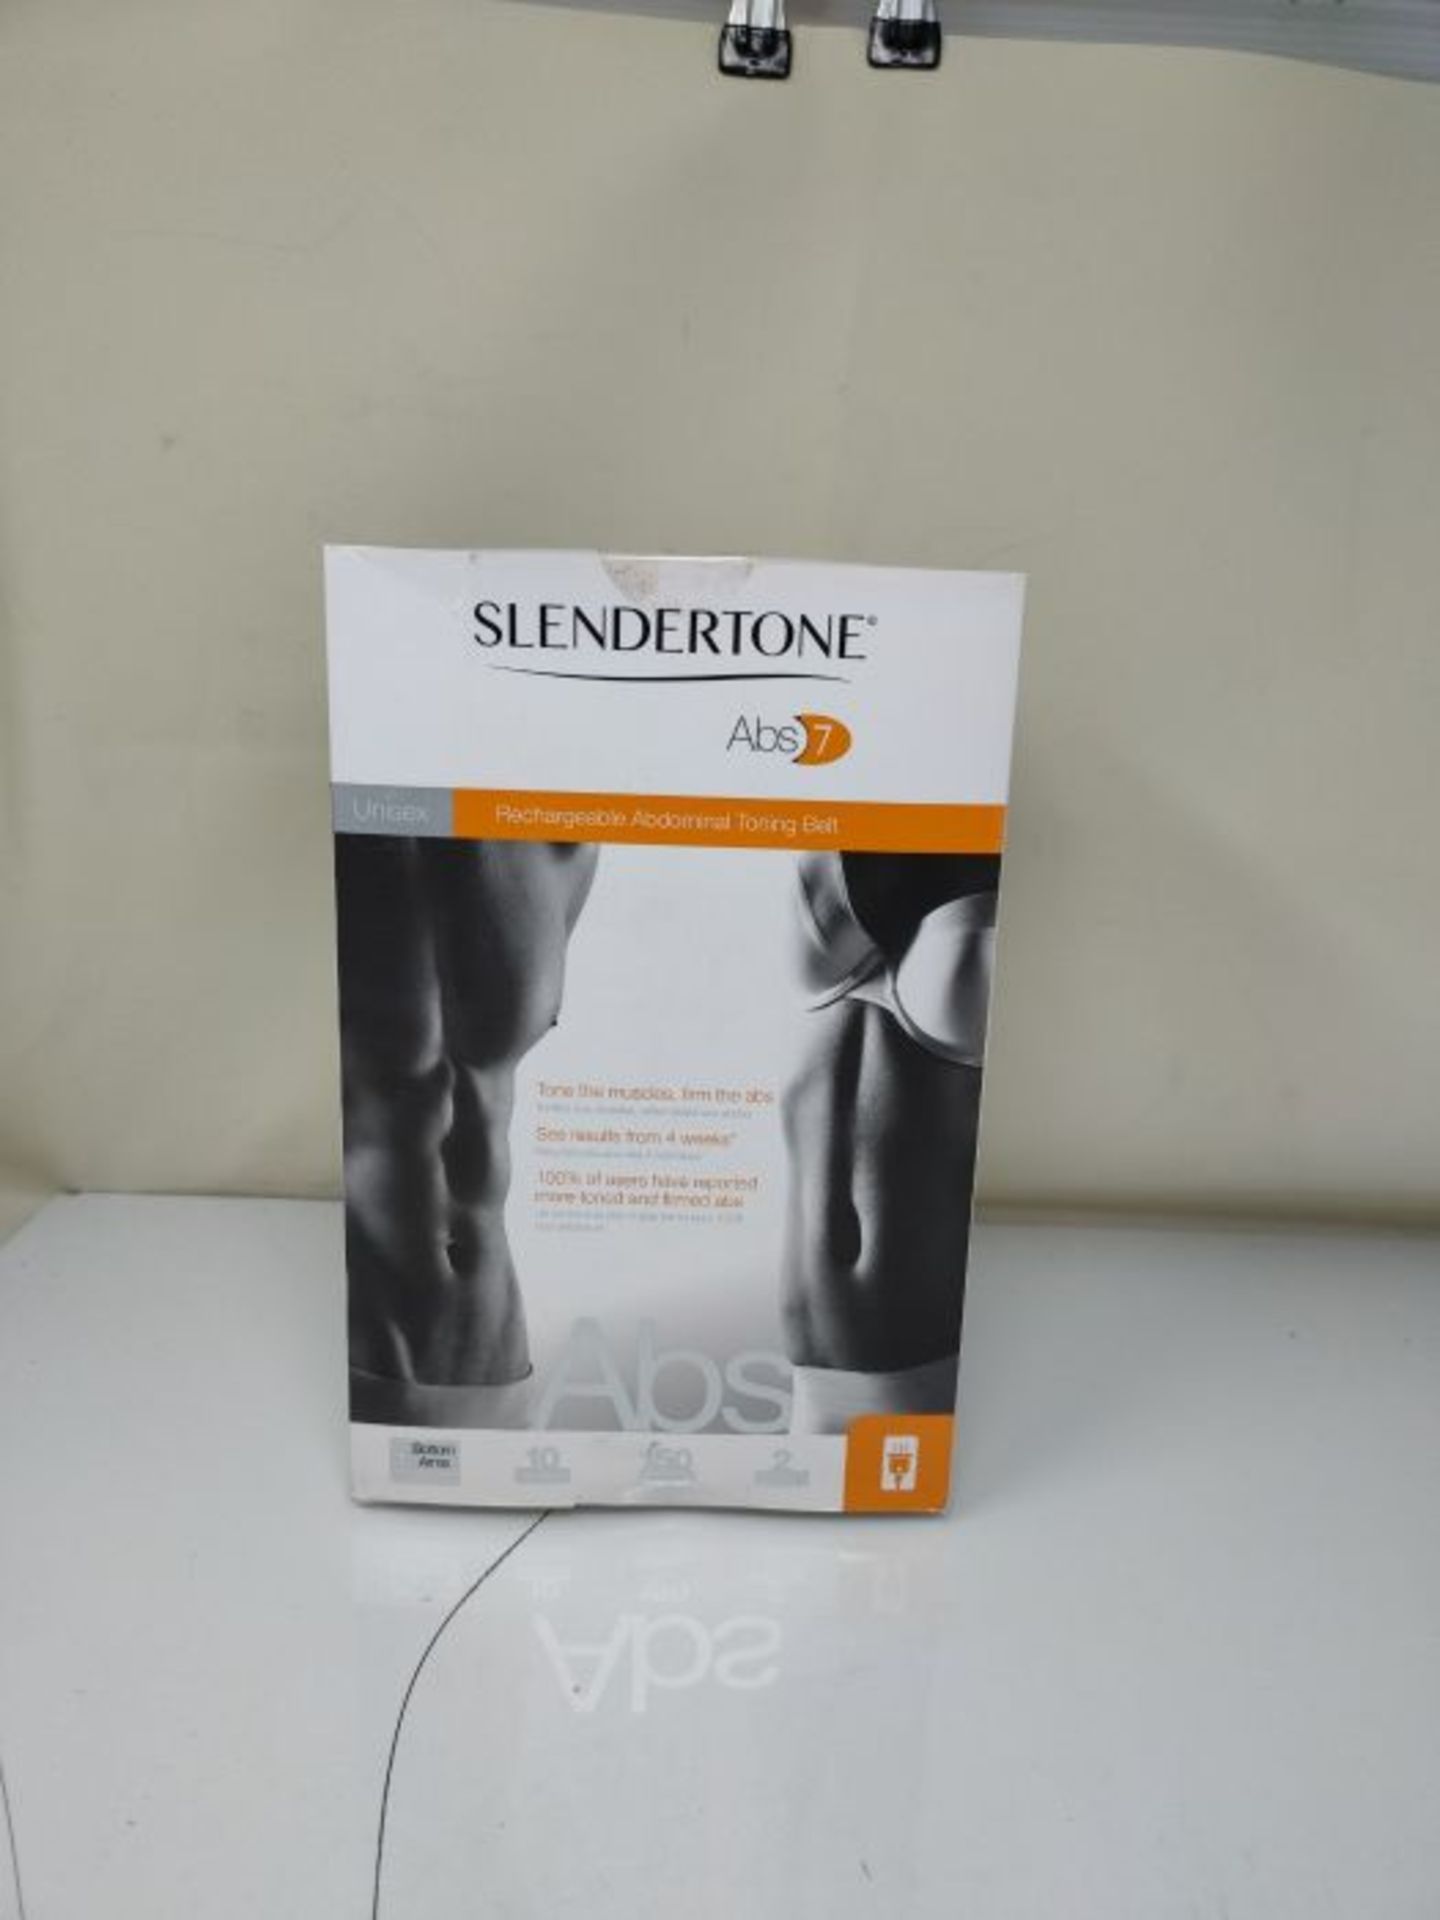 RRP £249.00 Slendertone Pack Short tonifiant et Ceinture Abdominale Abs7 Adulte Unisexe, Noir, 69- - Image 2 of 3